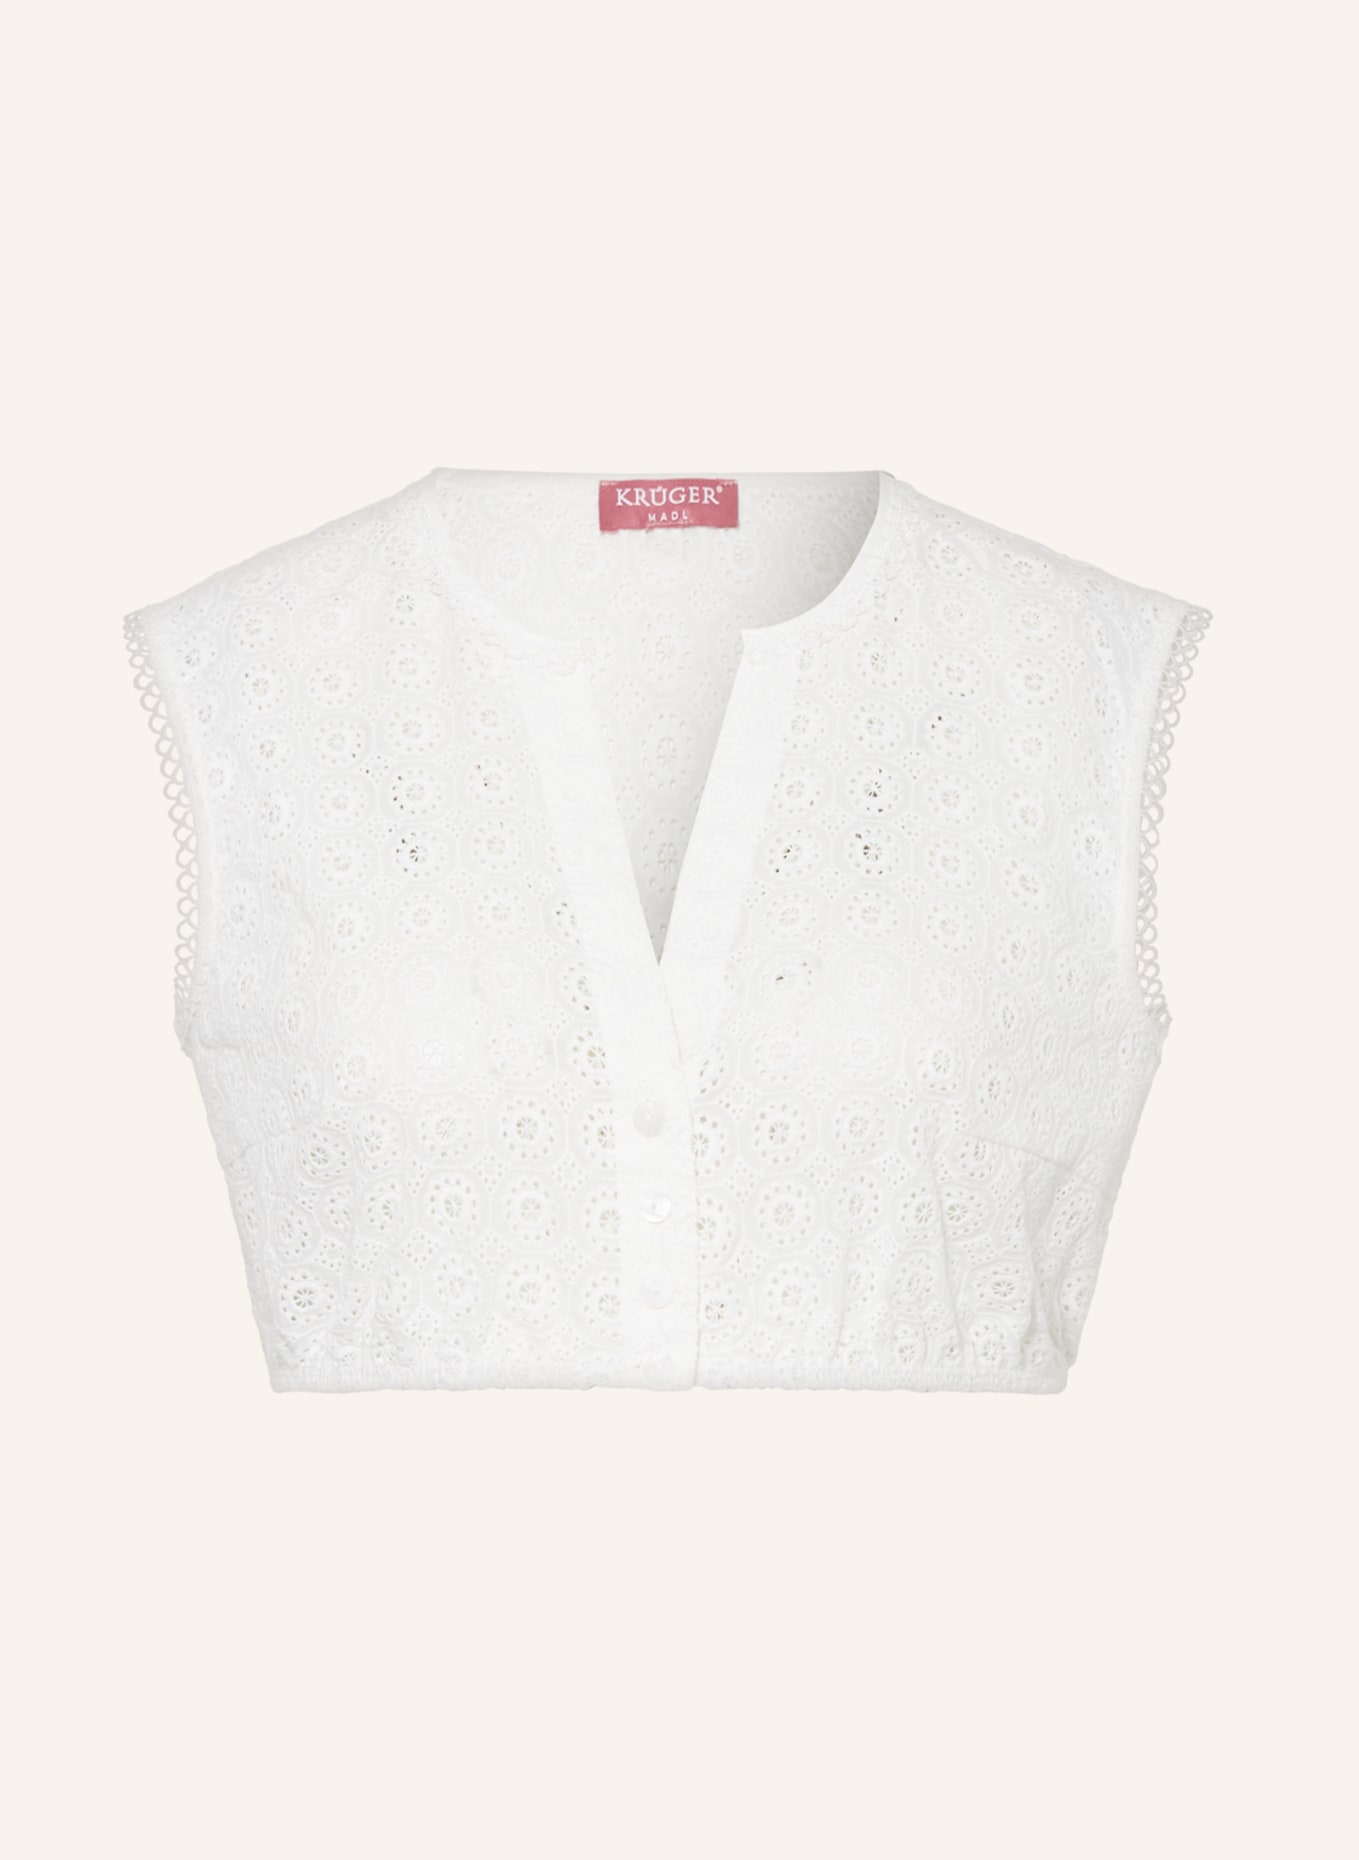 KRÜGER Dirndl blouse, Color: WHITE (Image 1)